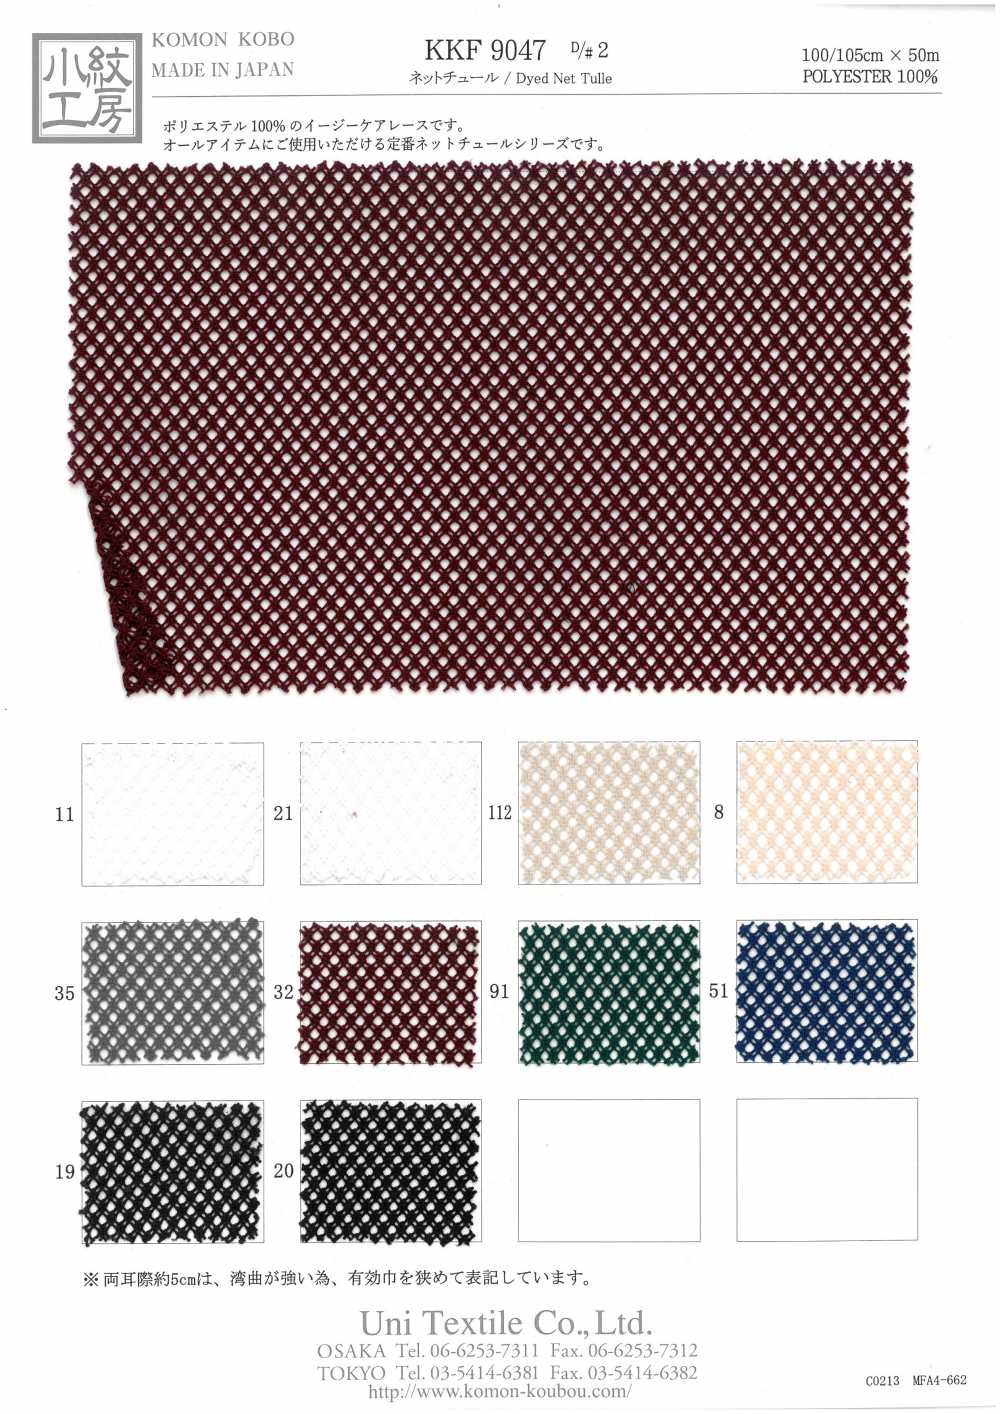 KKF9047-D/2 Tul De Red[Fabrica Textil] Uni Textile